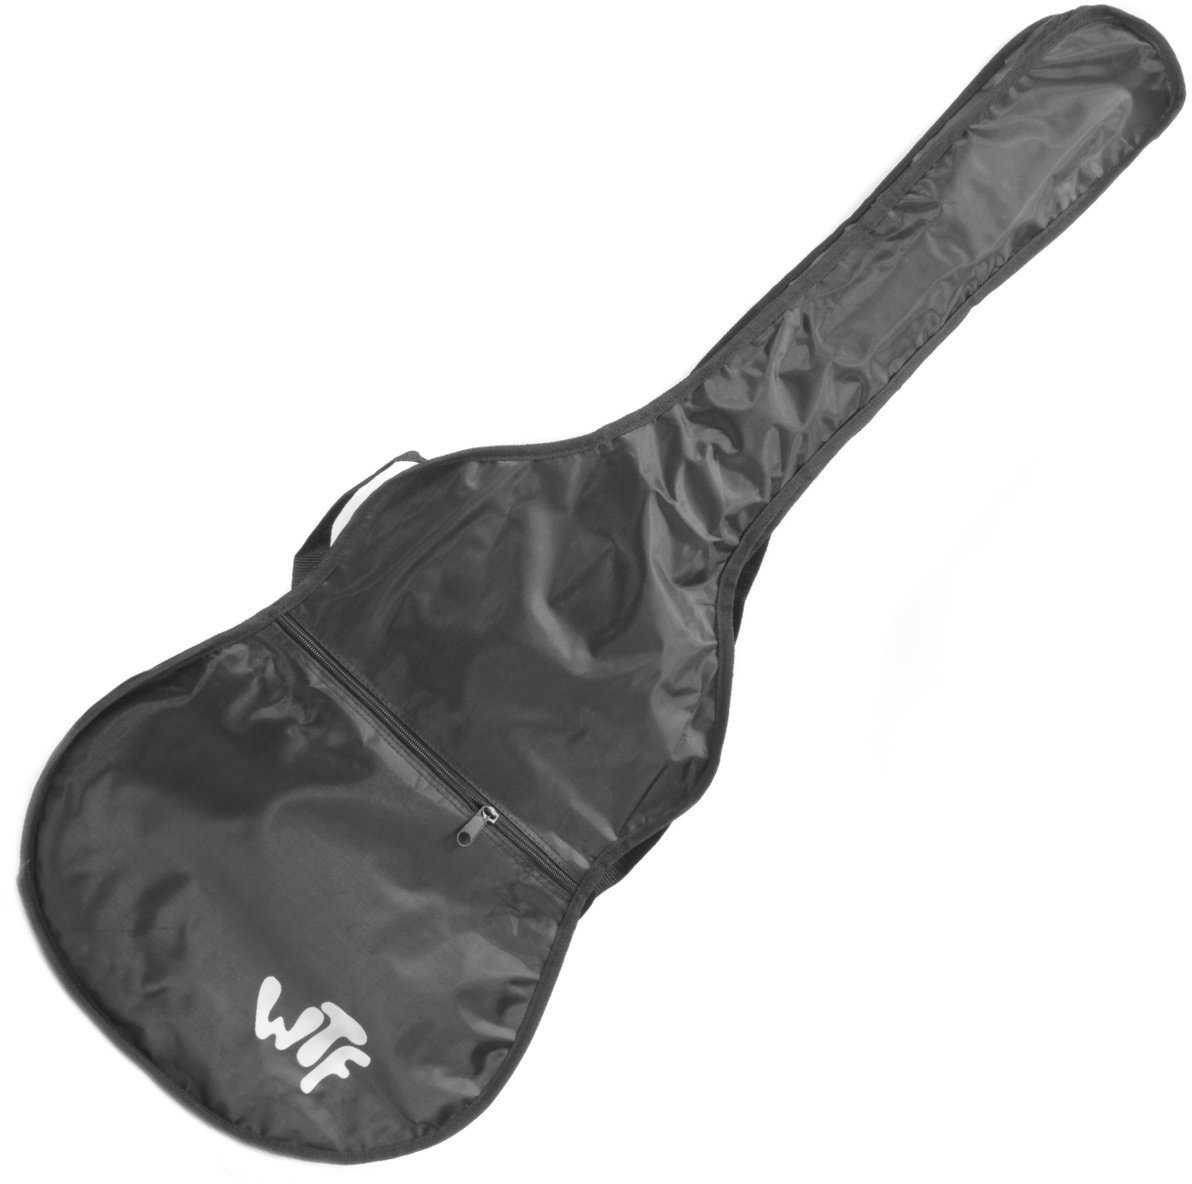 Tasche für Konzertgitarre, Gigbag für Konzertgitarre WTF CG00 Tasche für Konzertgitarre, Gigbag für Konzertgitarre Schwarz